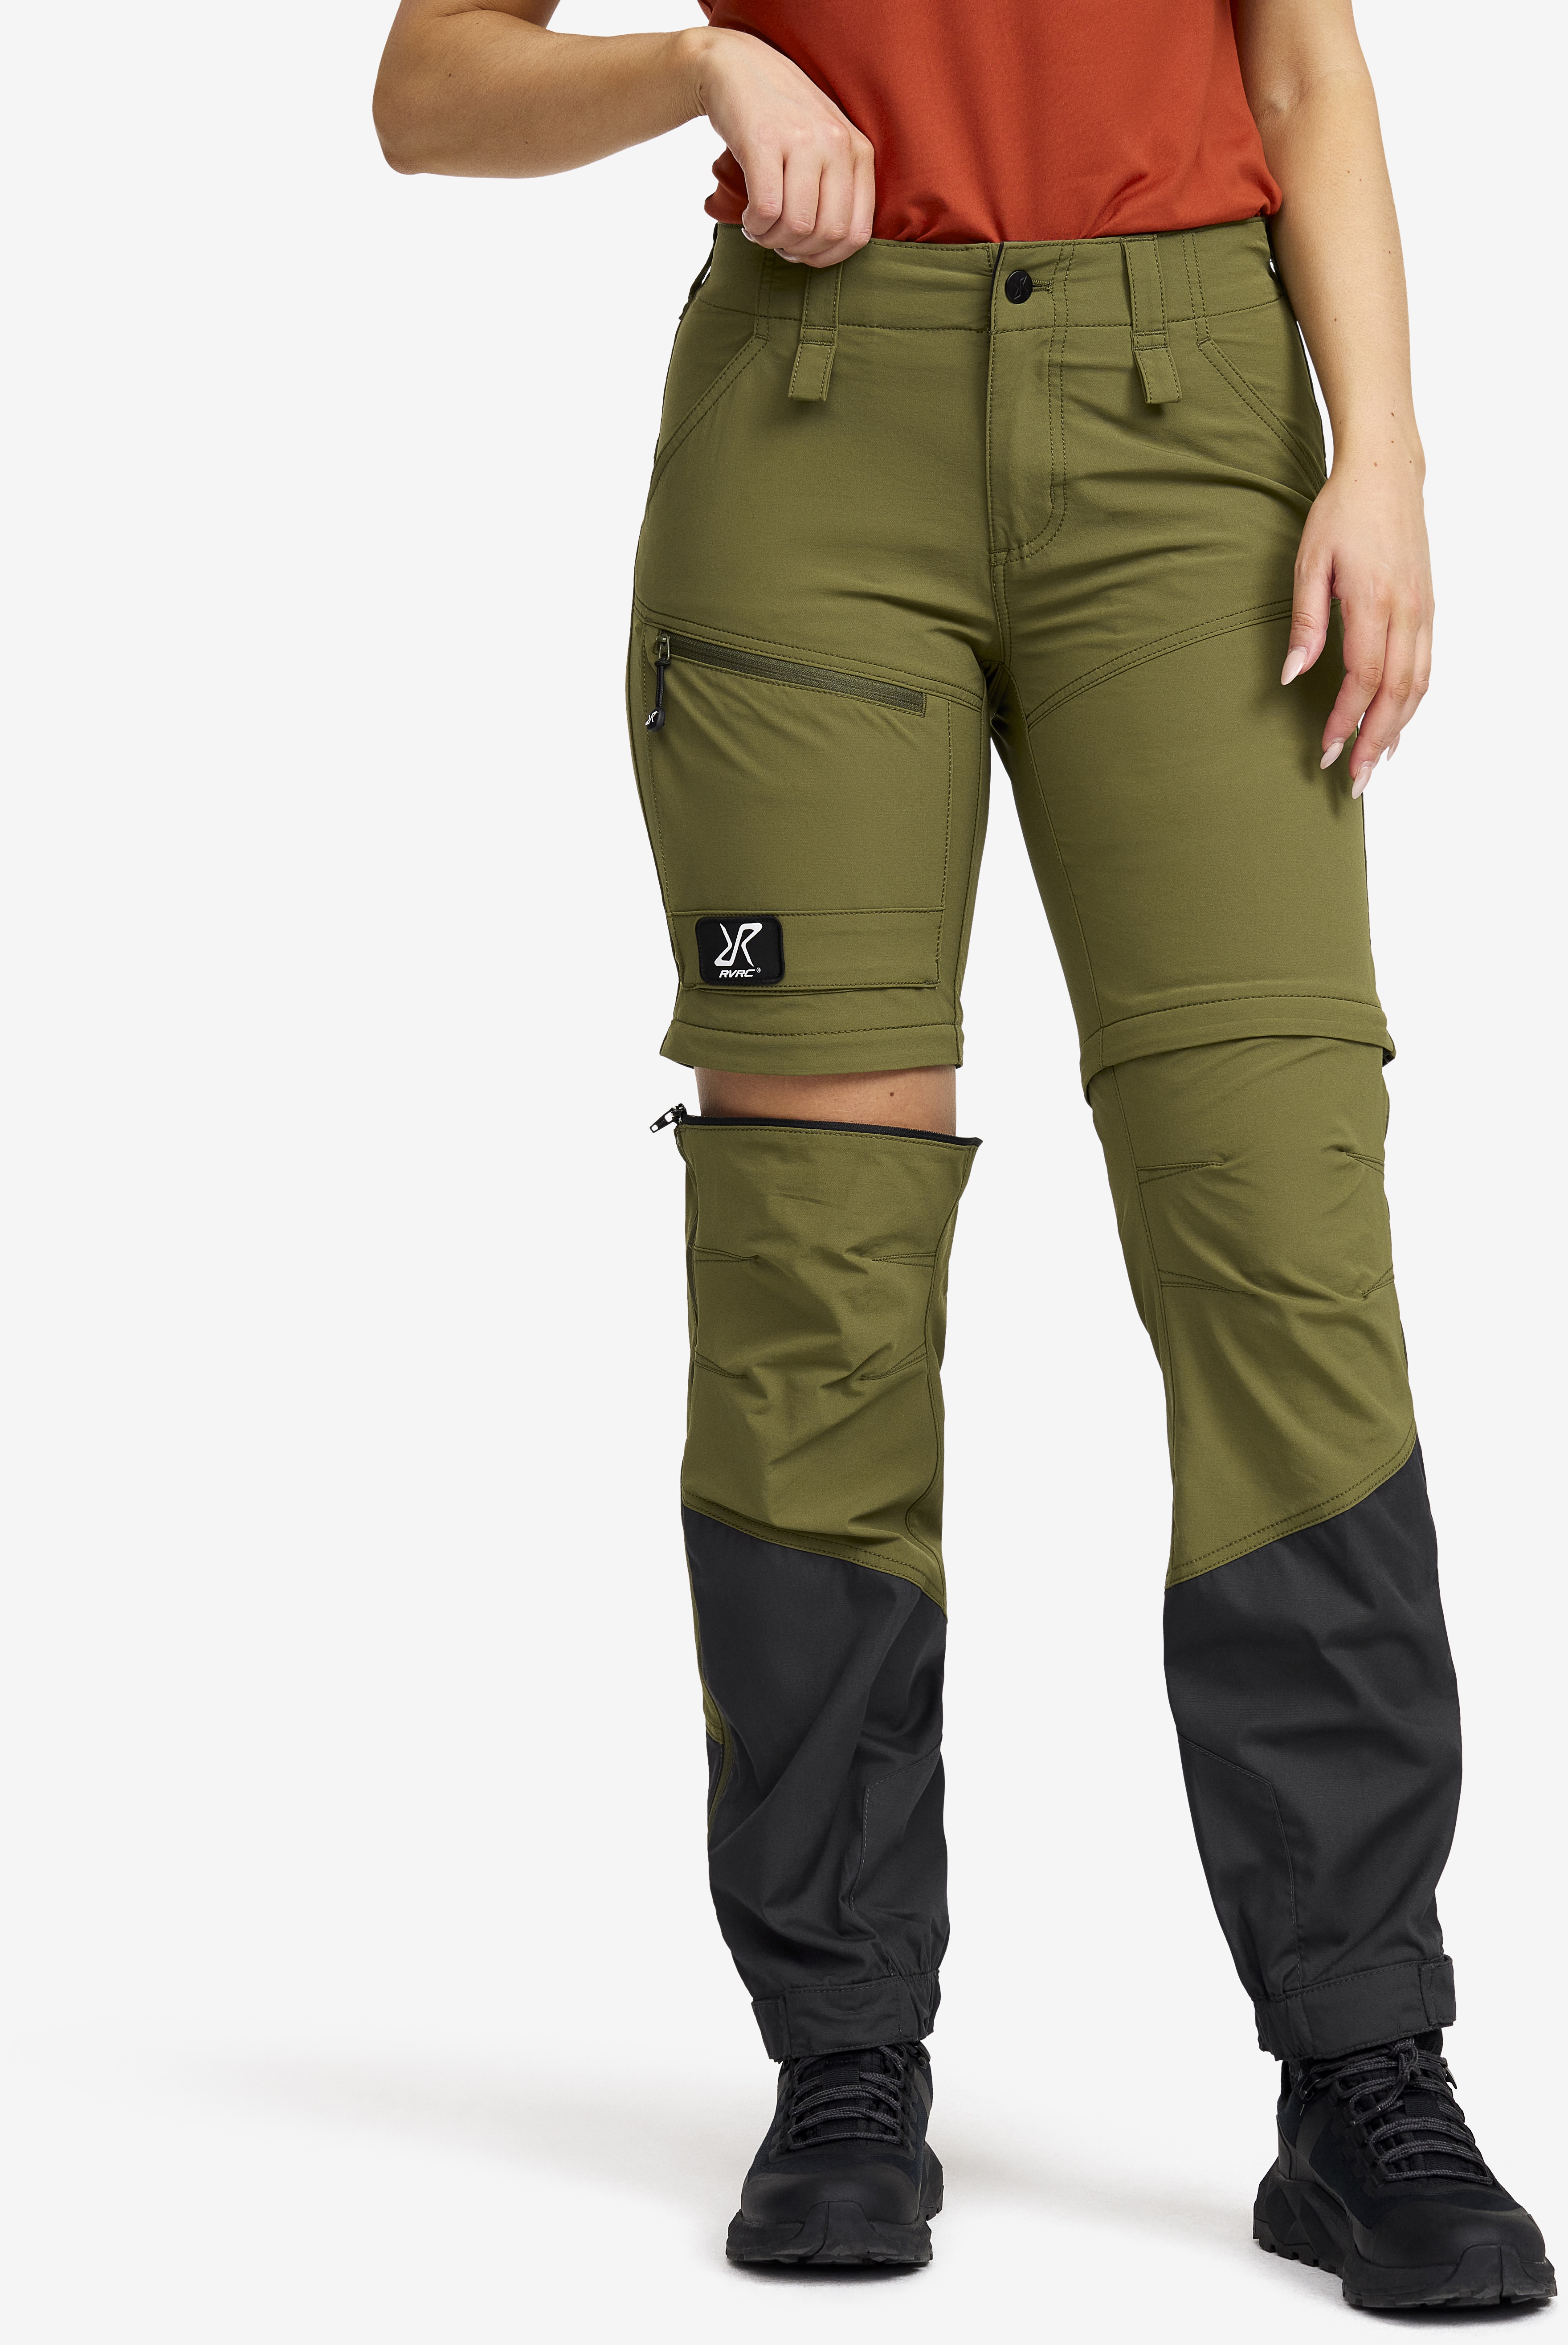 Range Pro Zip-off Pants Damen Burnt Olive/Anthracite, Größe:3XL - Zip-off-hosen - Grün